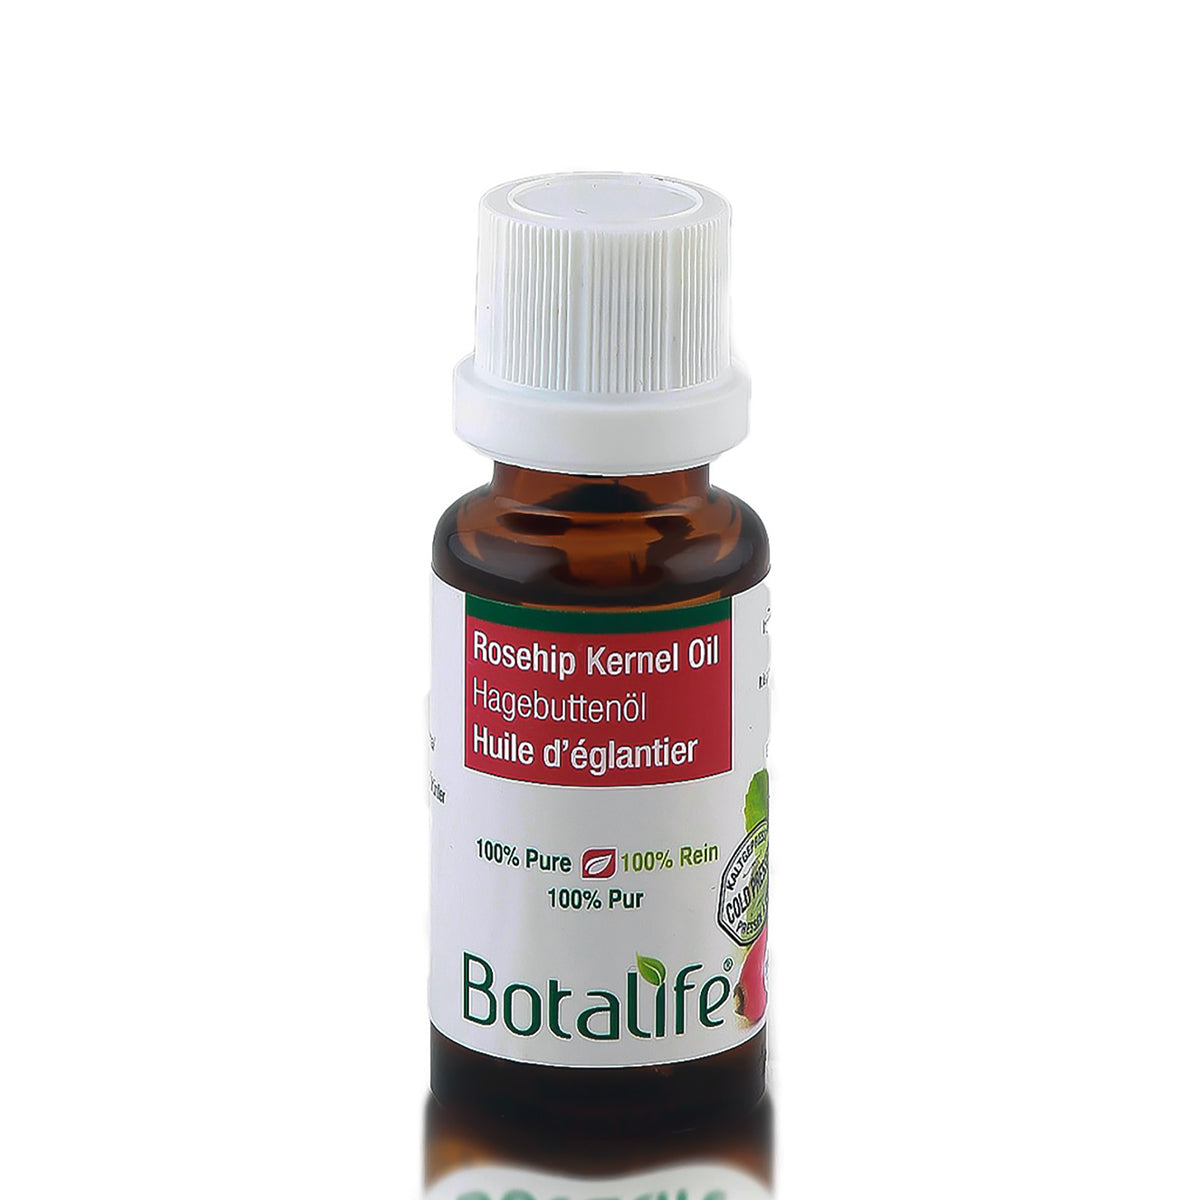 Botalife Rosehip Kernel oil